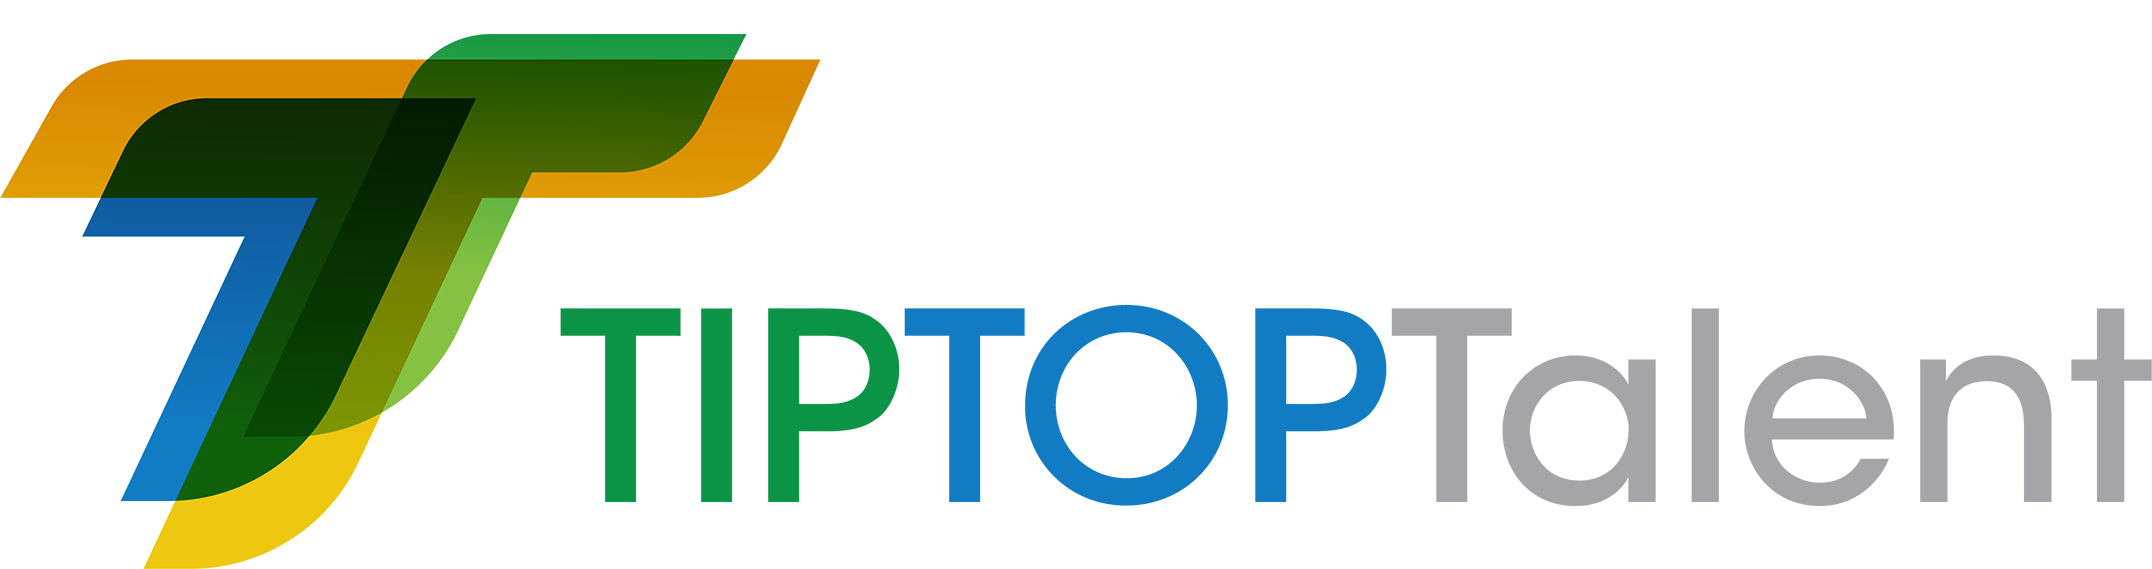 cropped-tiptoptalent-logo.png